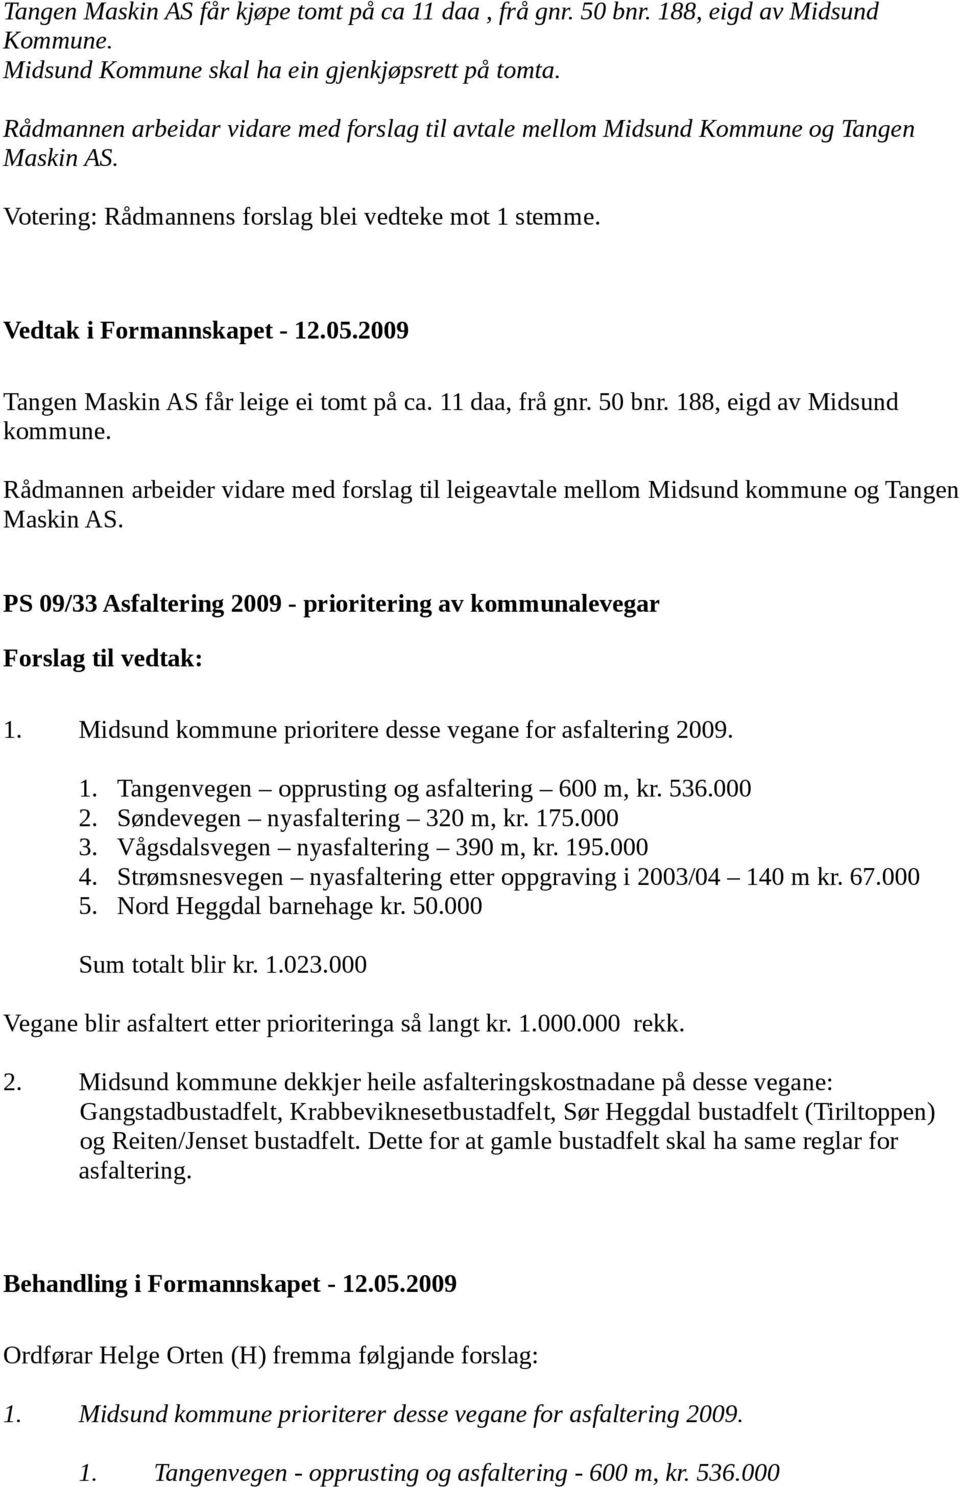 11 daa, frå gnr. 50 bnr. 188, eigd av Midsund kommune. Rådmannen arbeider vidare med forslag til leigeavtale mellom Midsund kommune og Tangen Maskin AS.